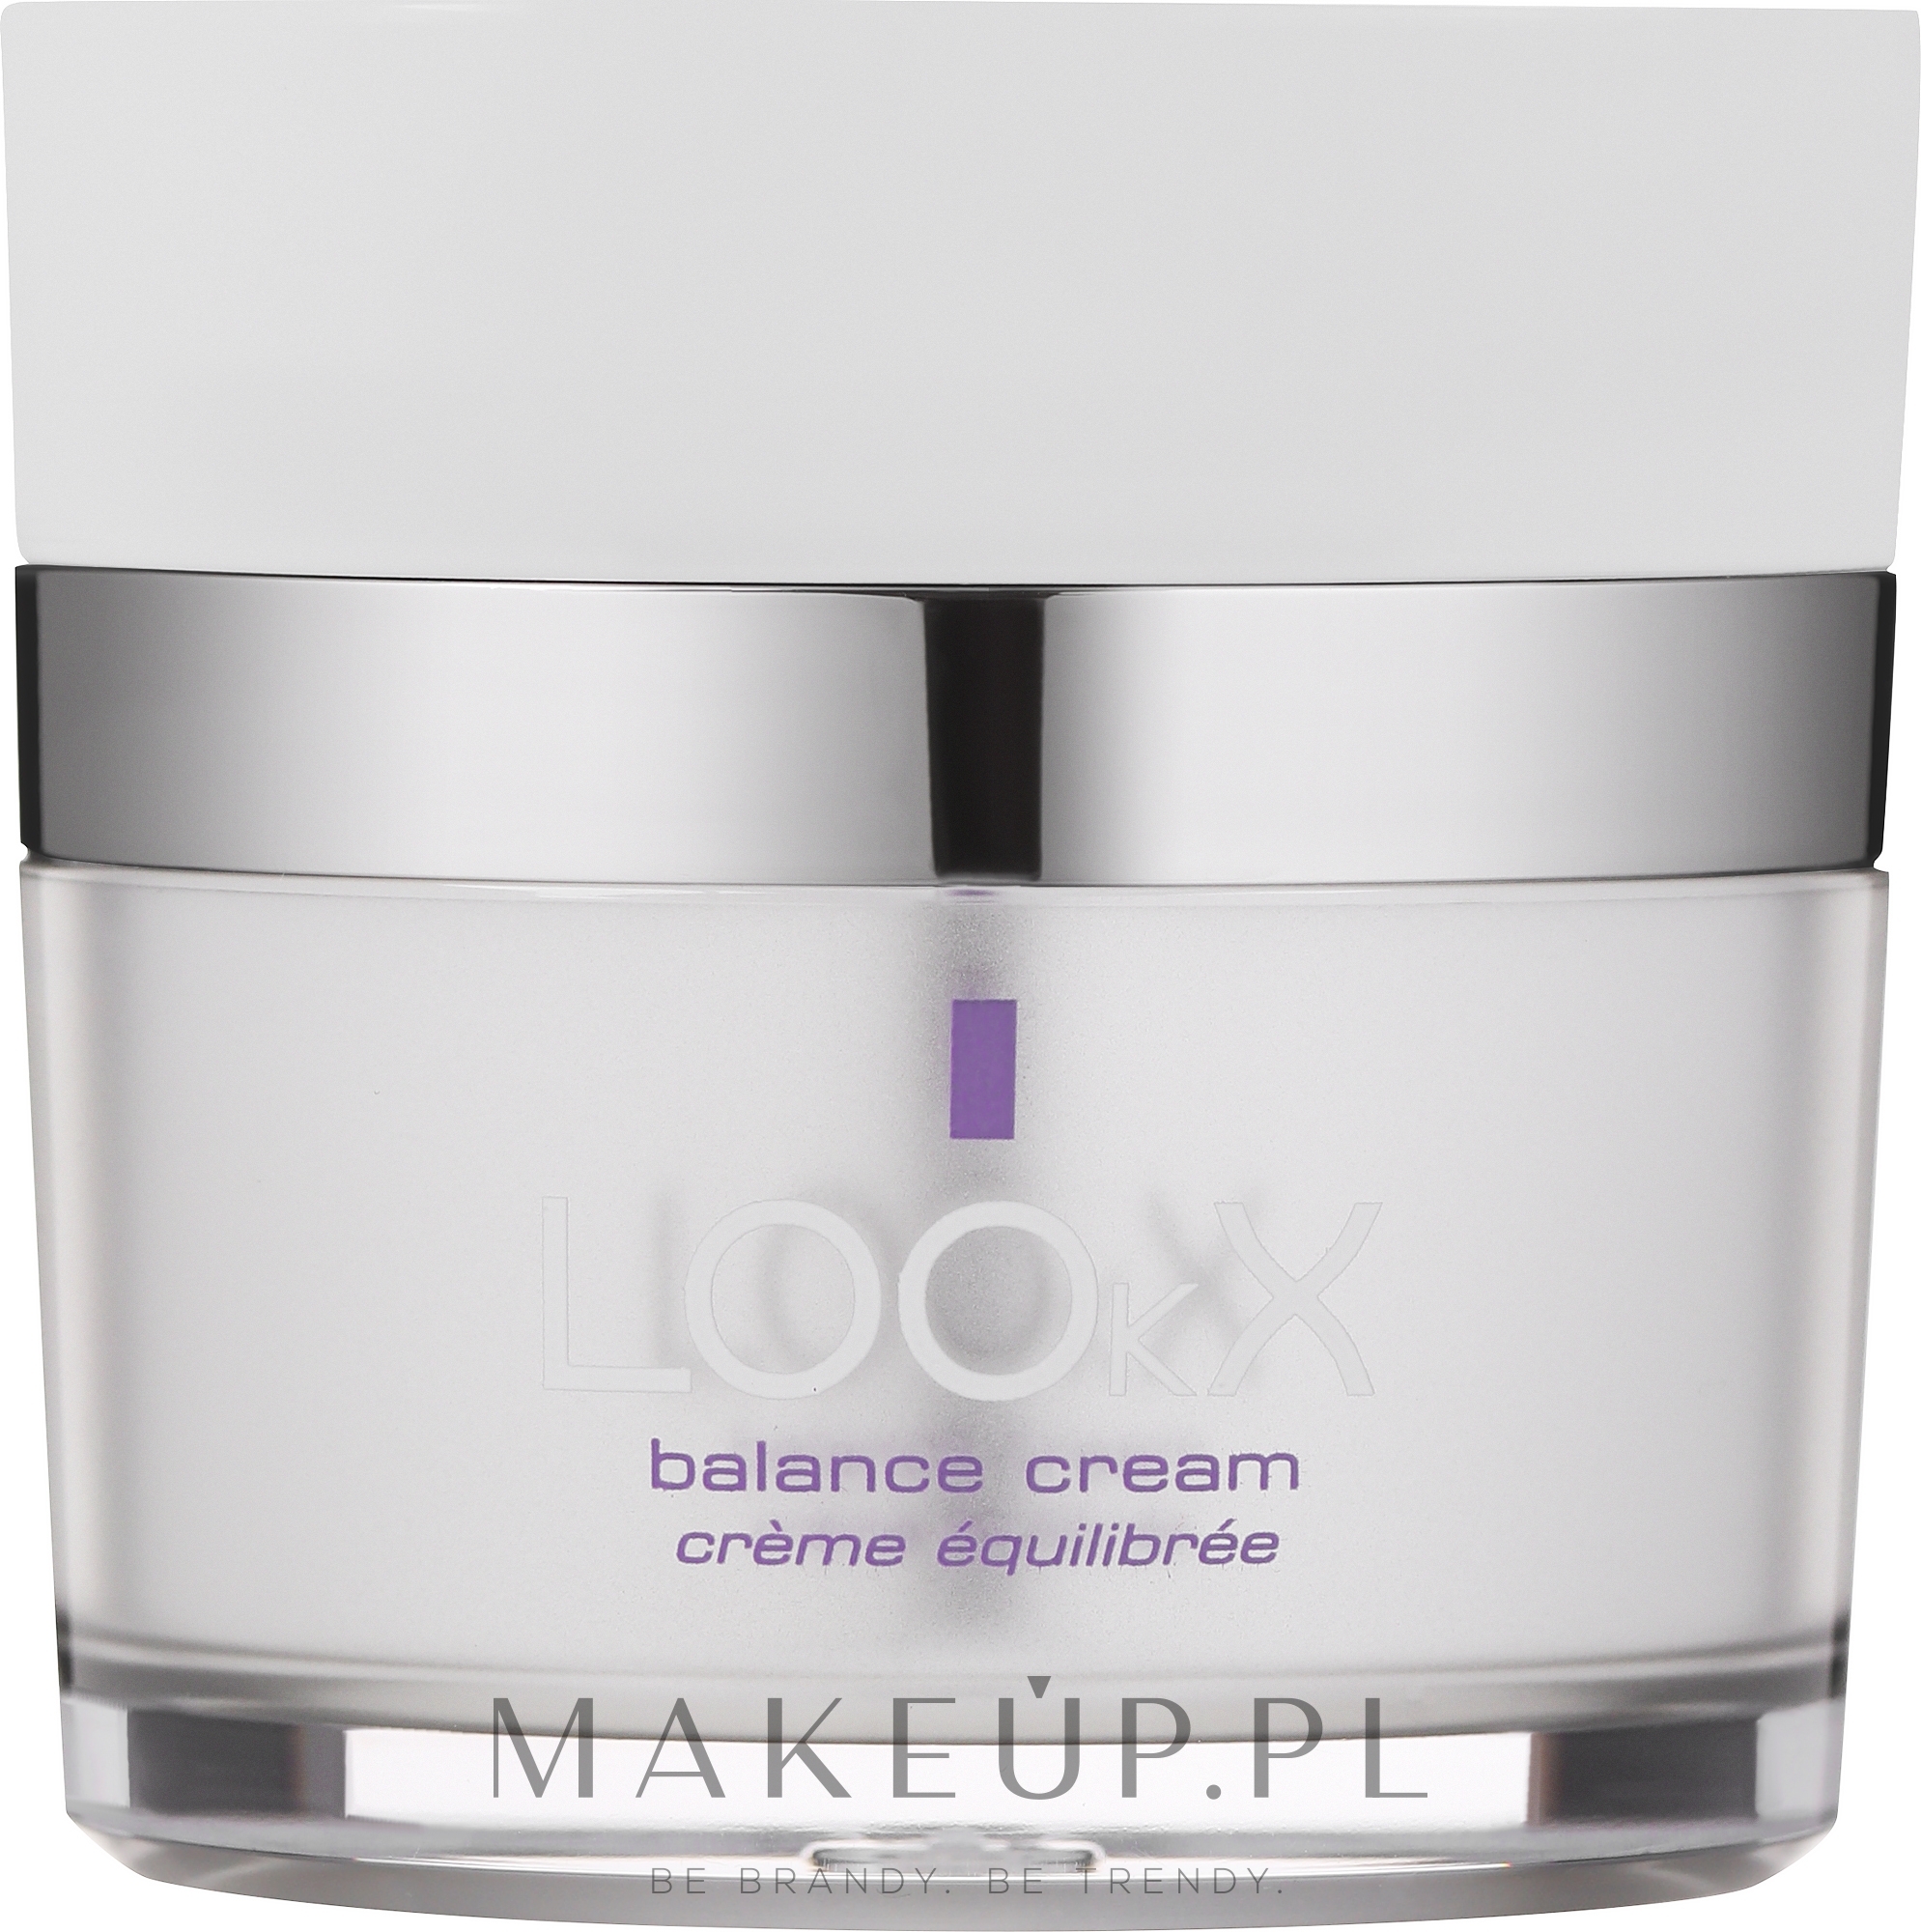 Nawilżający krem balansujący do twarzy - LOOkX Balance Cream — Zdjęcie 50 ml